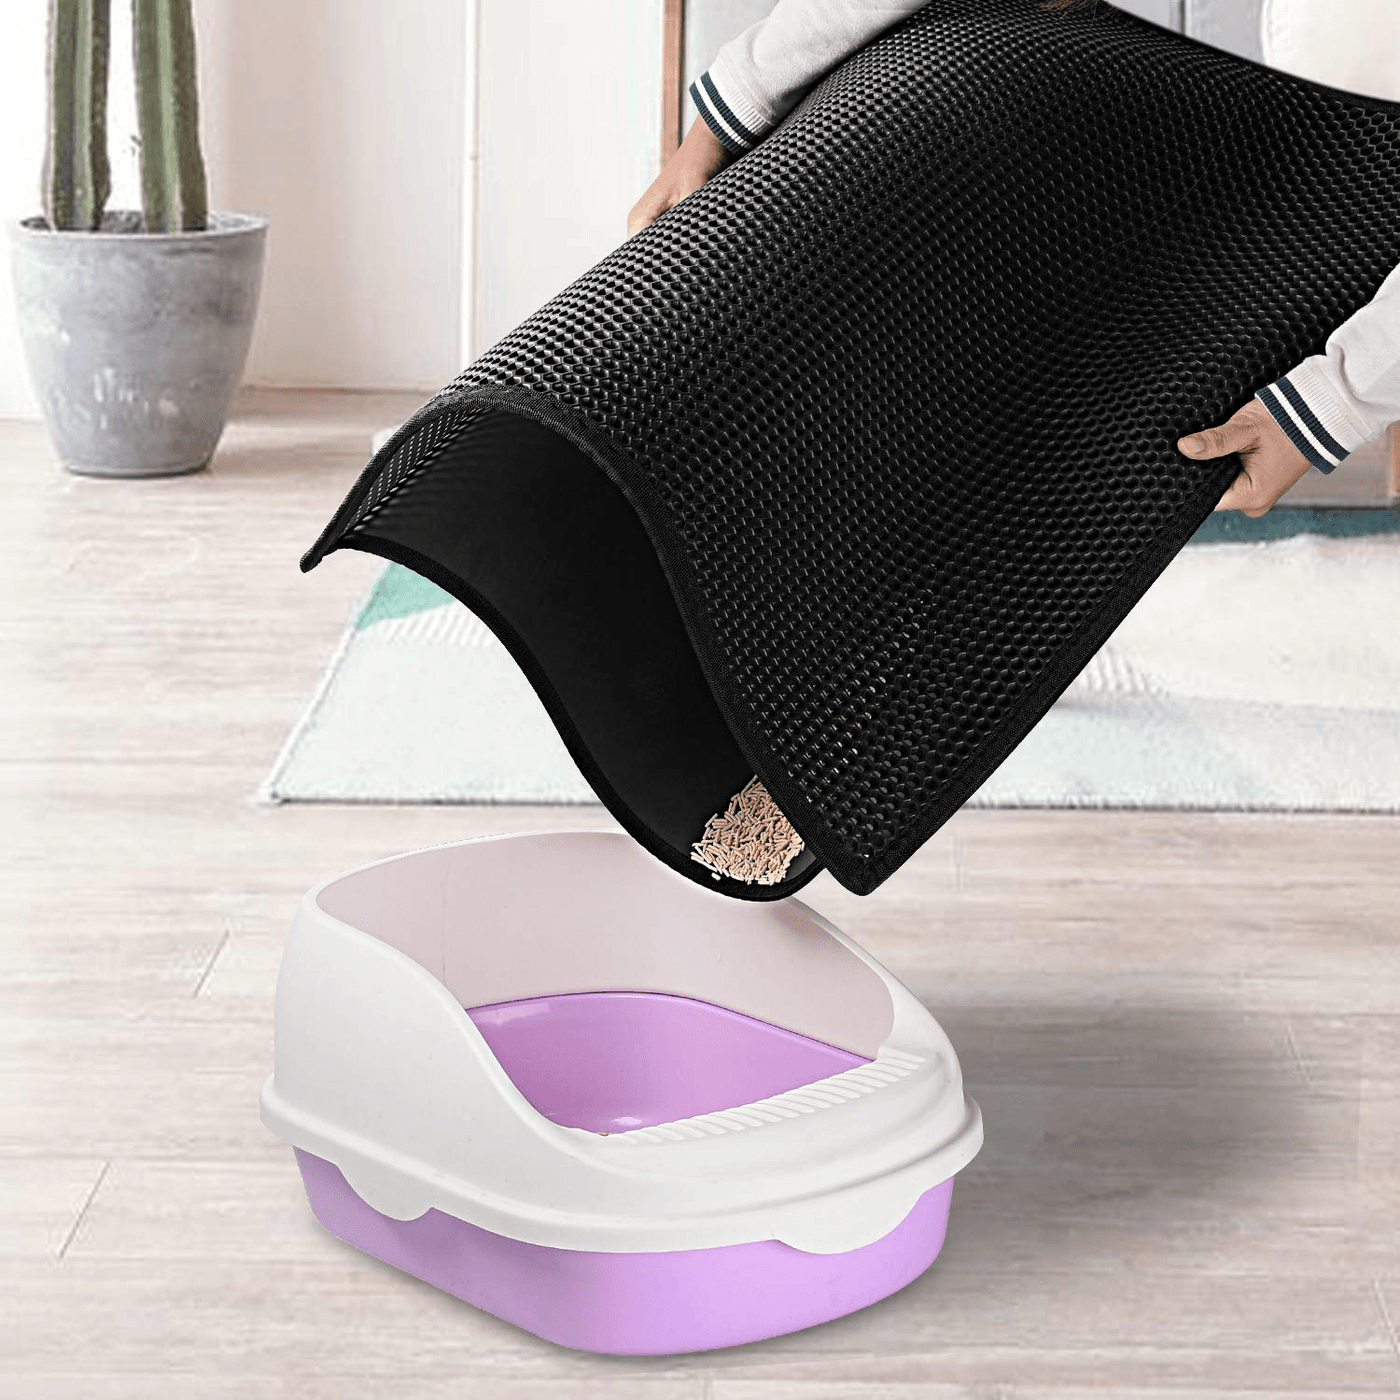 Honeycomb Cat Litter Mat - Waterproof & Non-Slip.